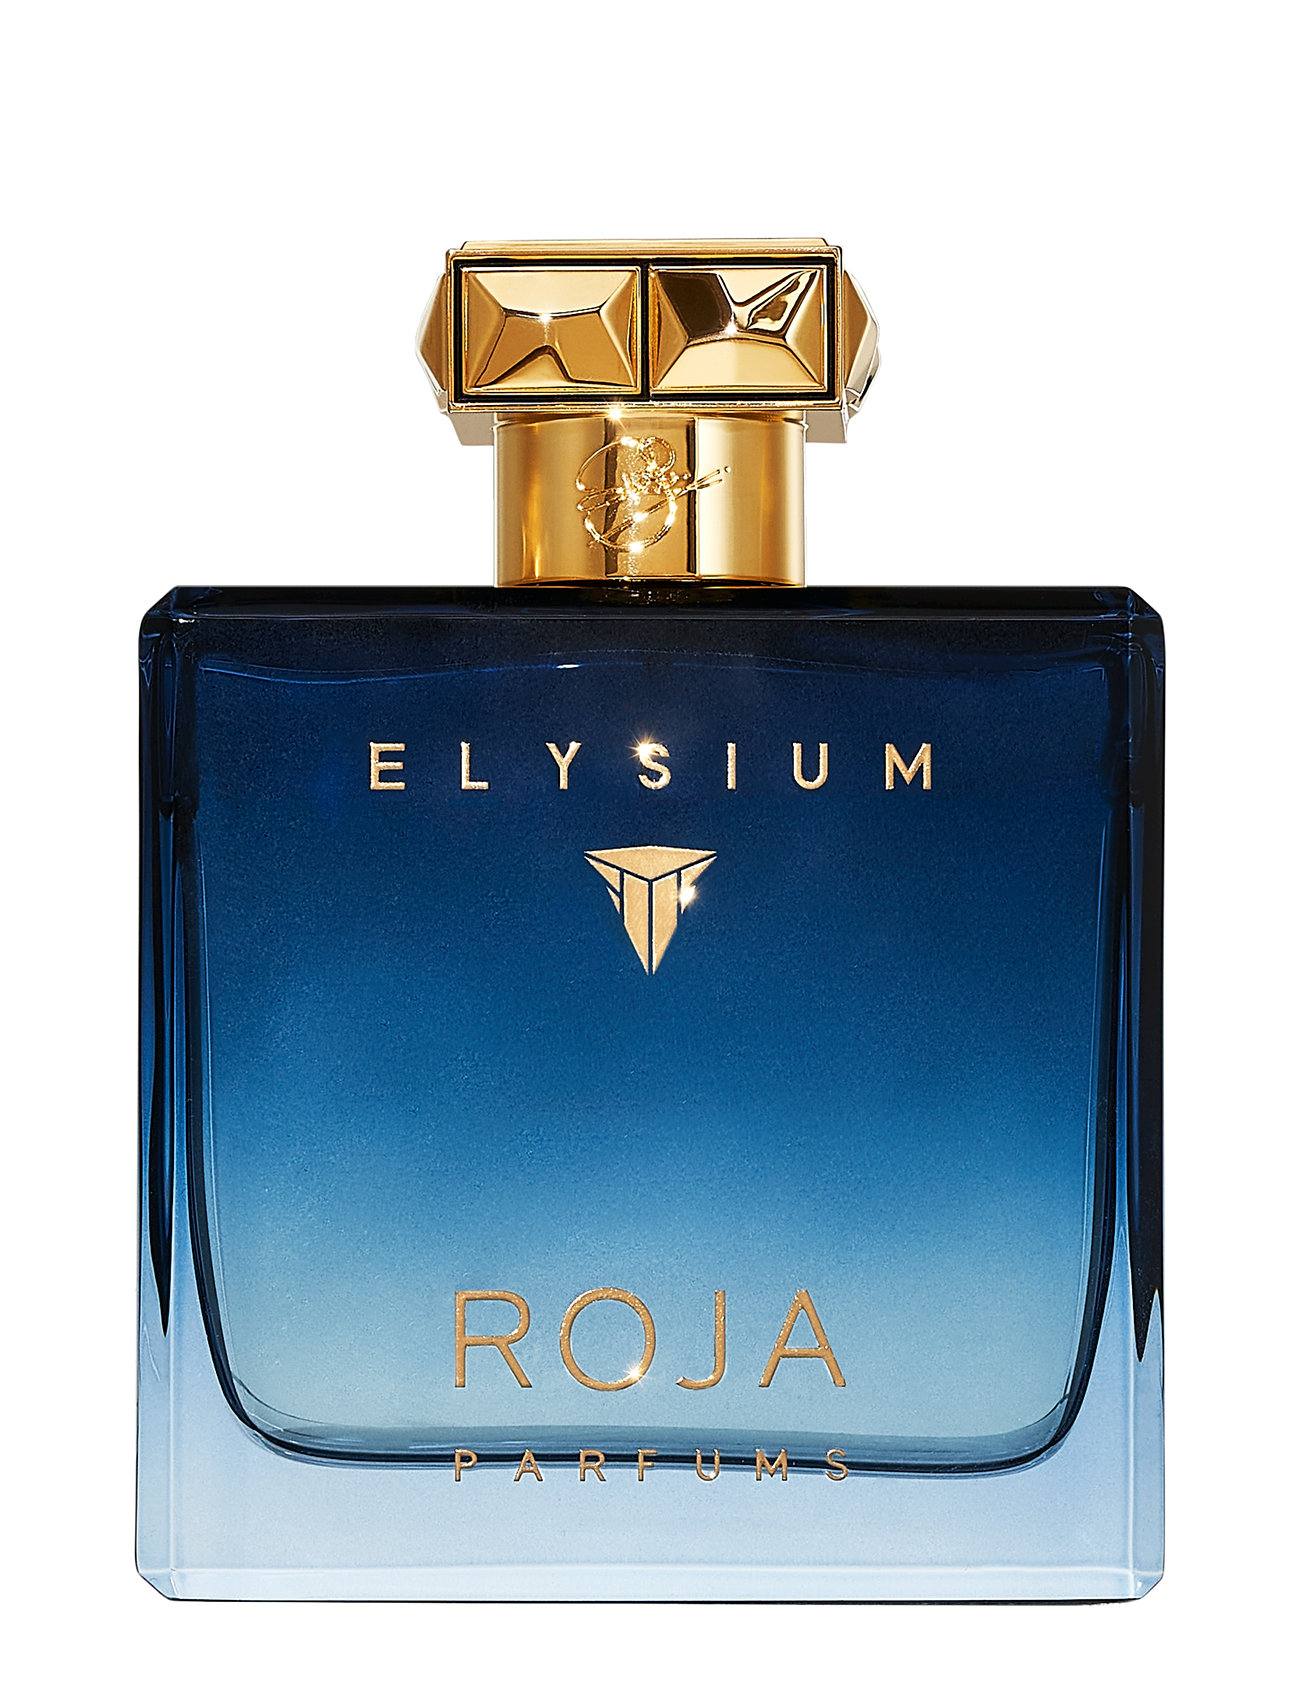 Elysium Parfum Cologne Parfume Eau De Parfum Nude Roja Parfums